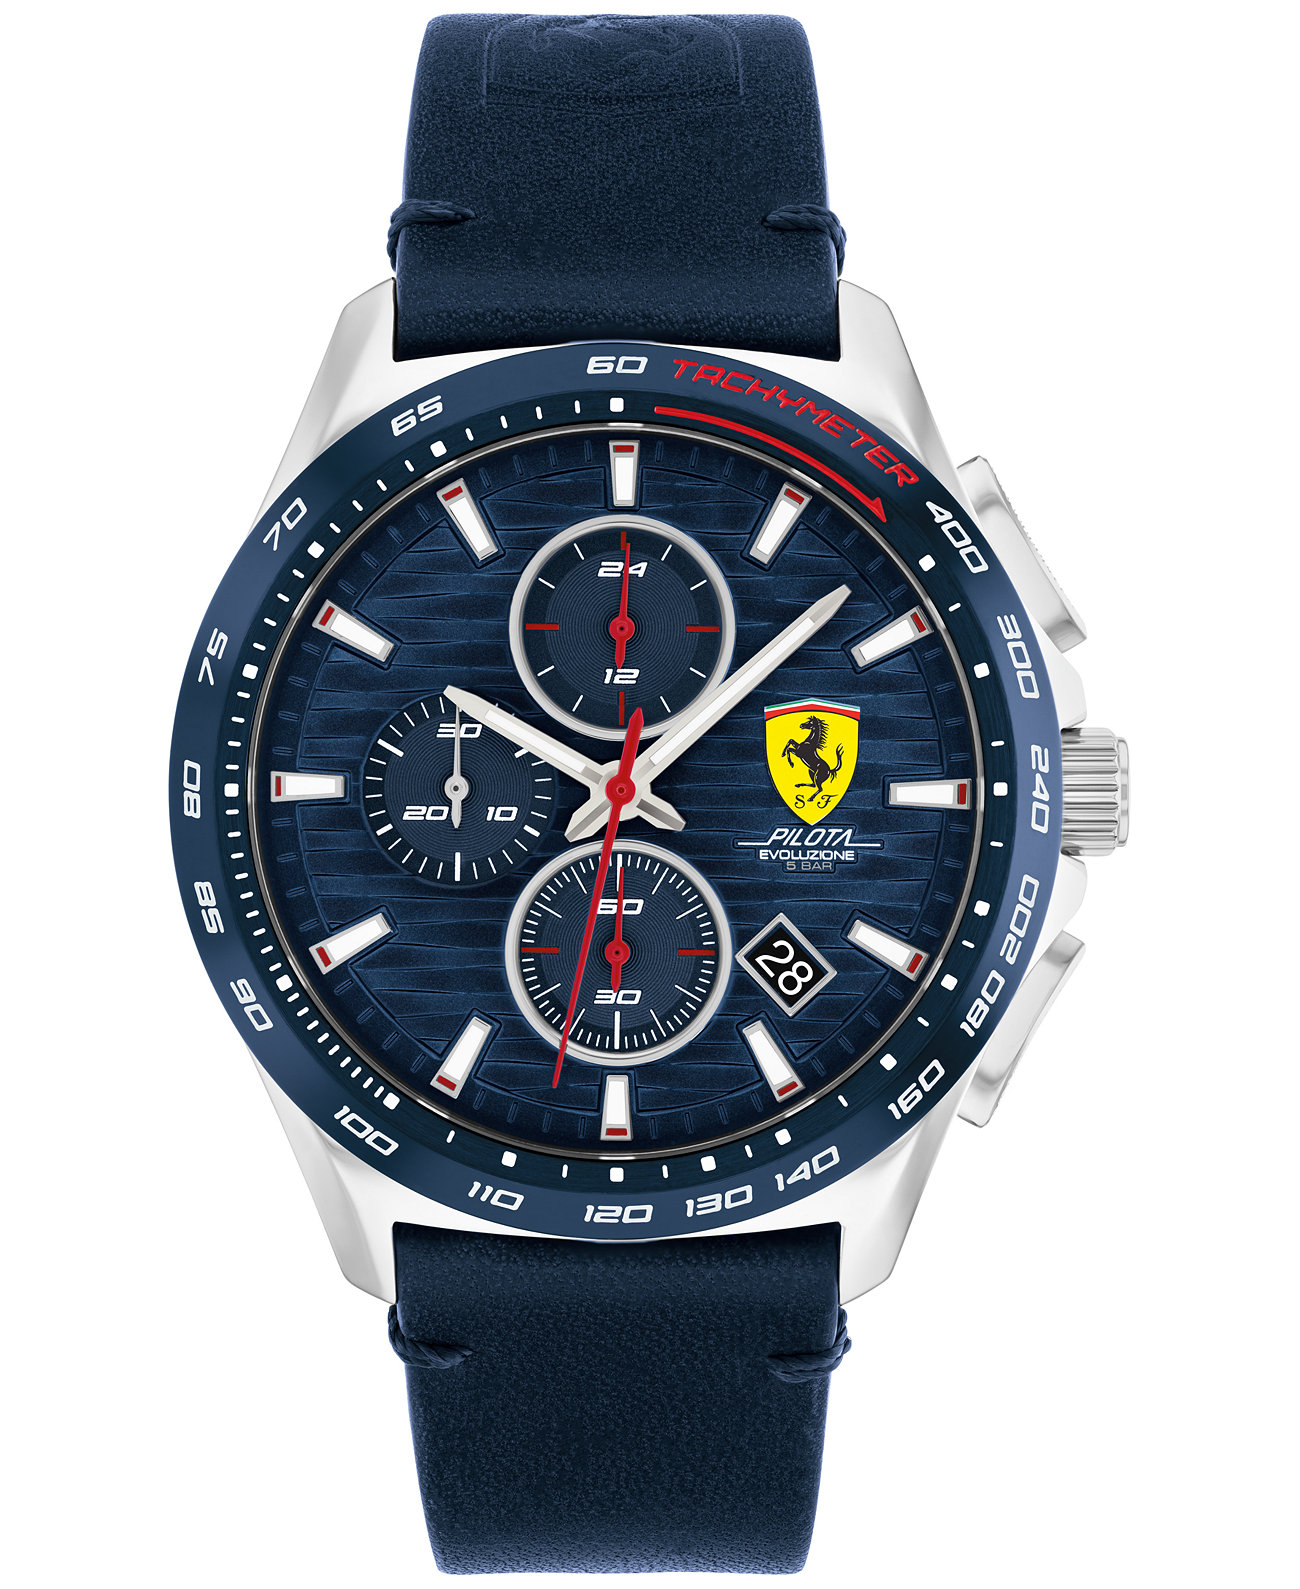 Мужские часы с хронографом Pilota Evo с синим кожаным ремешком и сеткой из нержавеющей стали 44 мм Ferrari